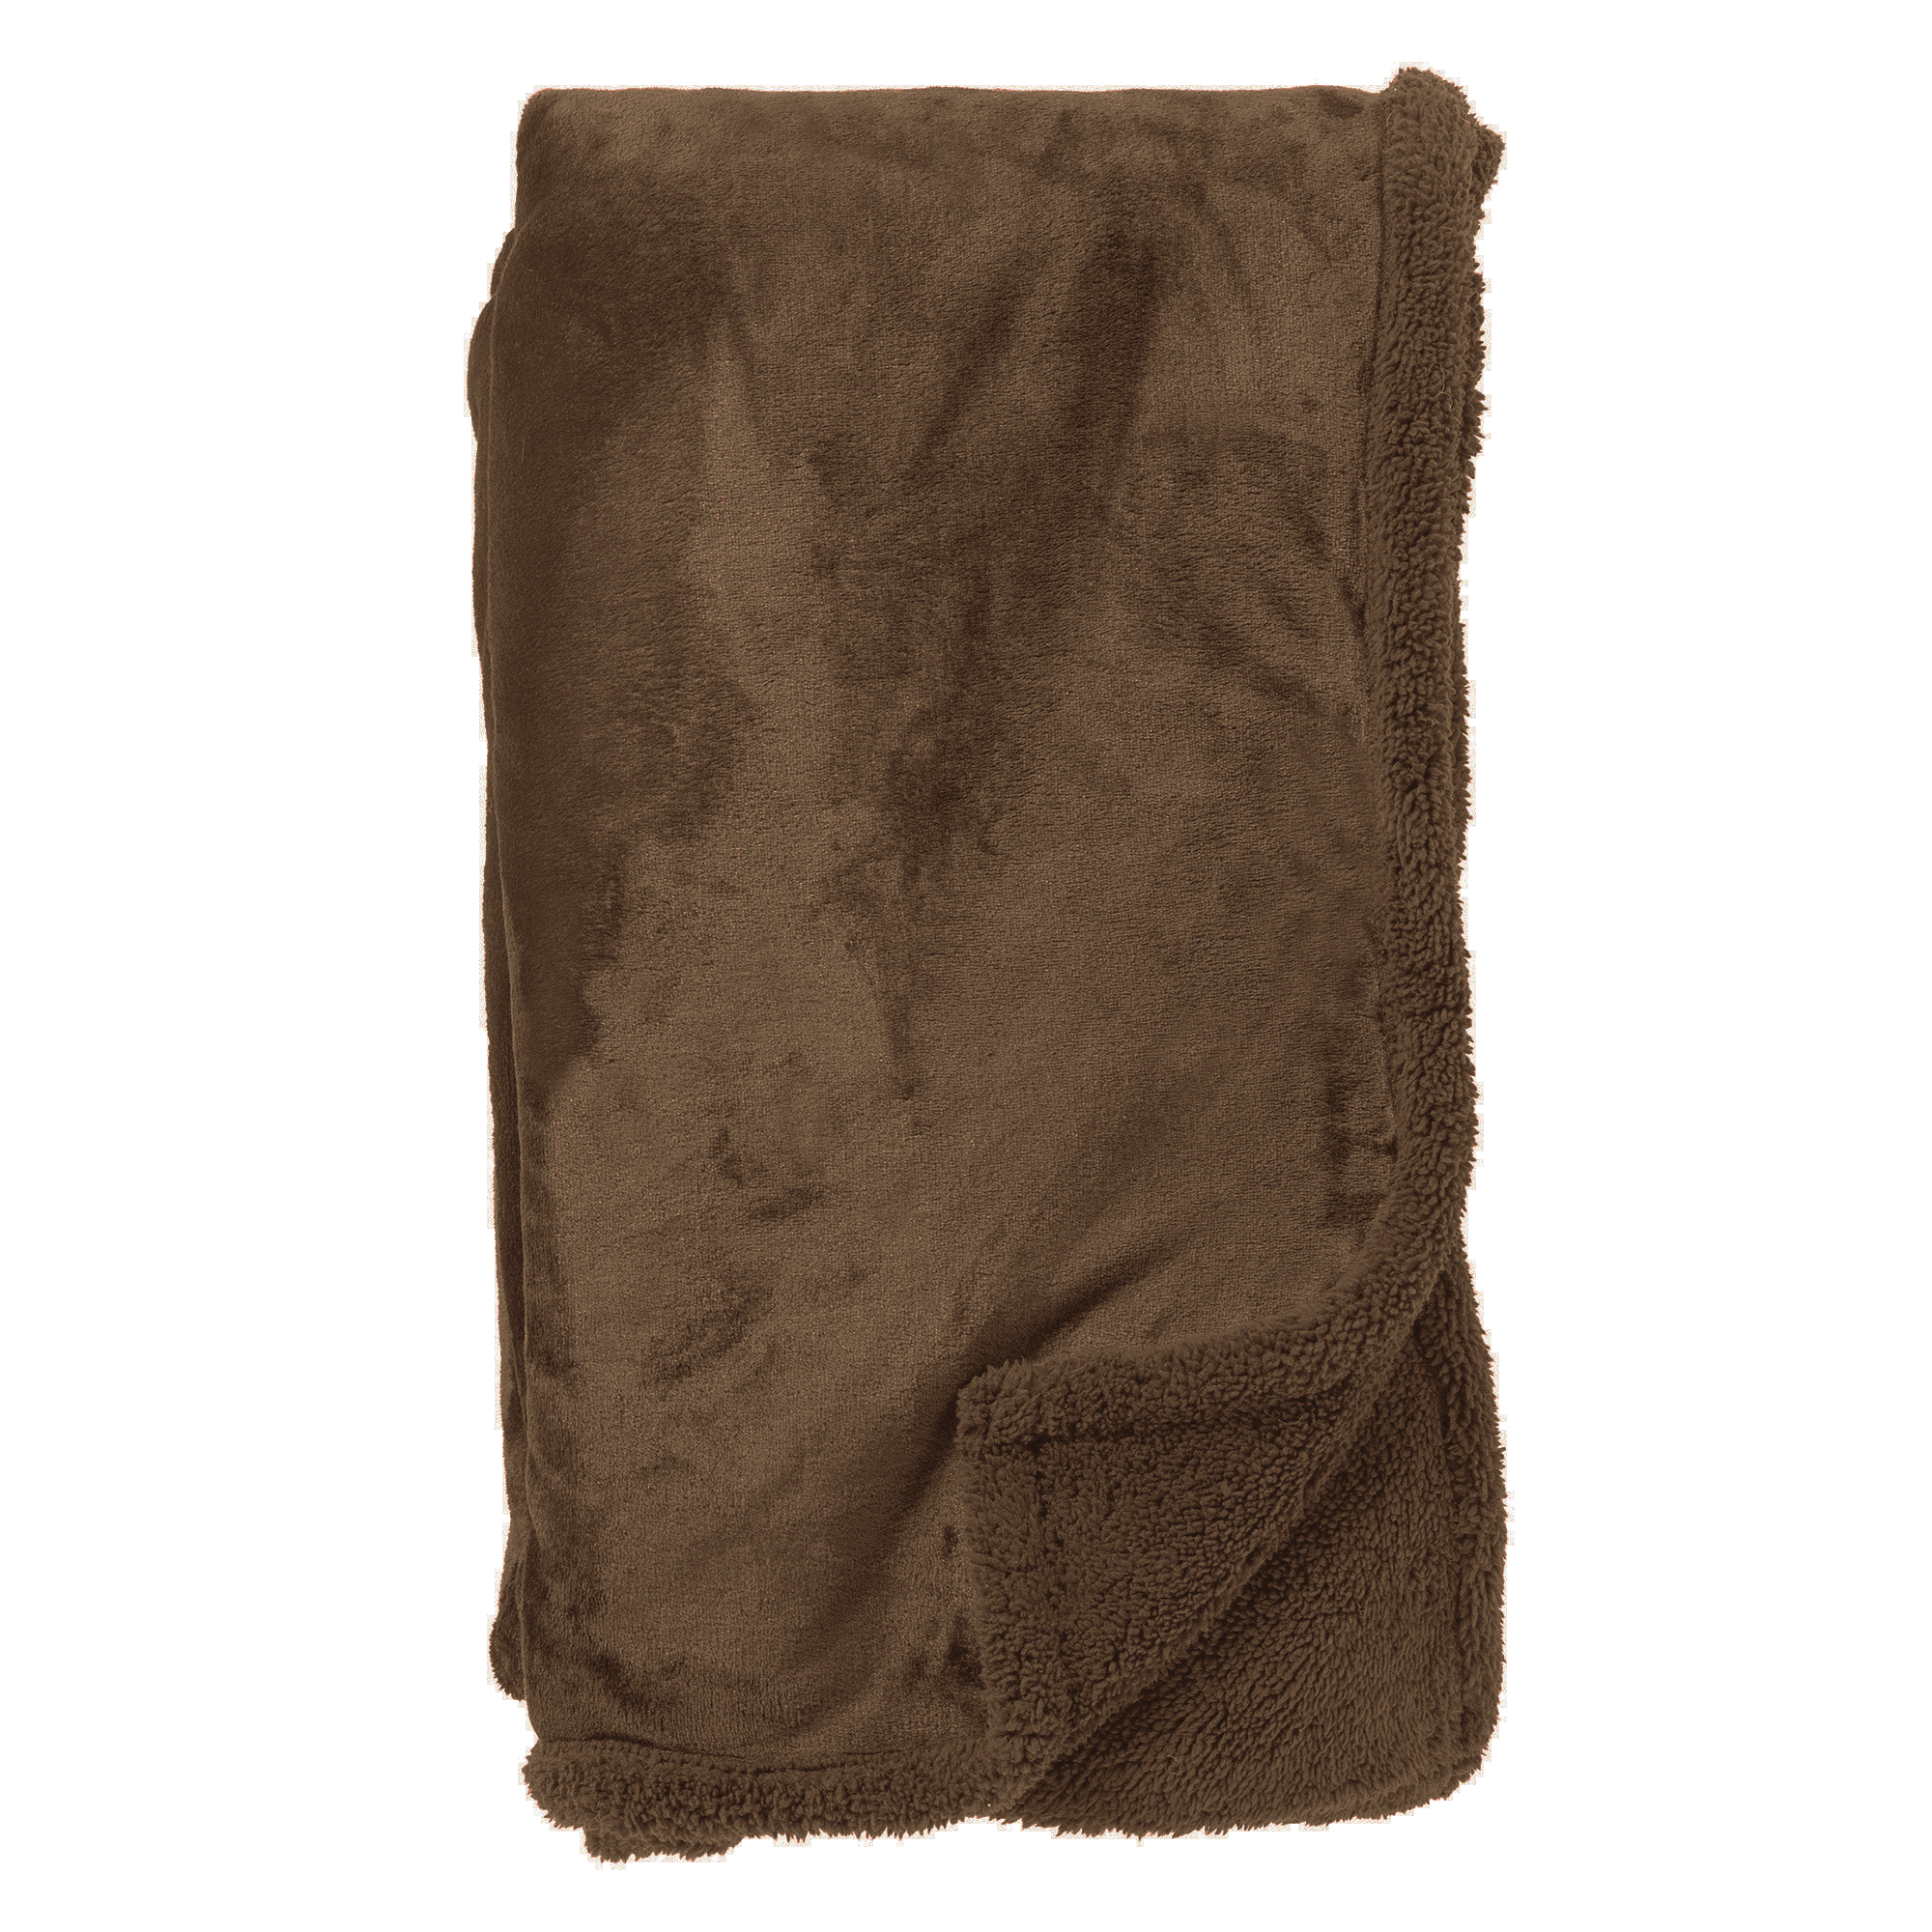 STANLEY - Plaid 150x200 cm - fleece deken met teddy en fleece - Chocolate Martini - donkerbruin